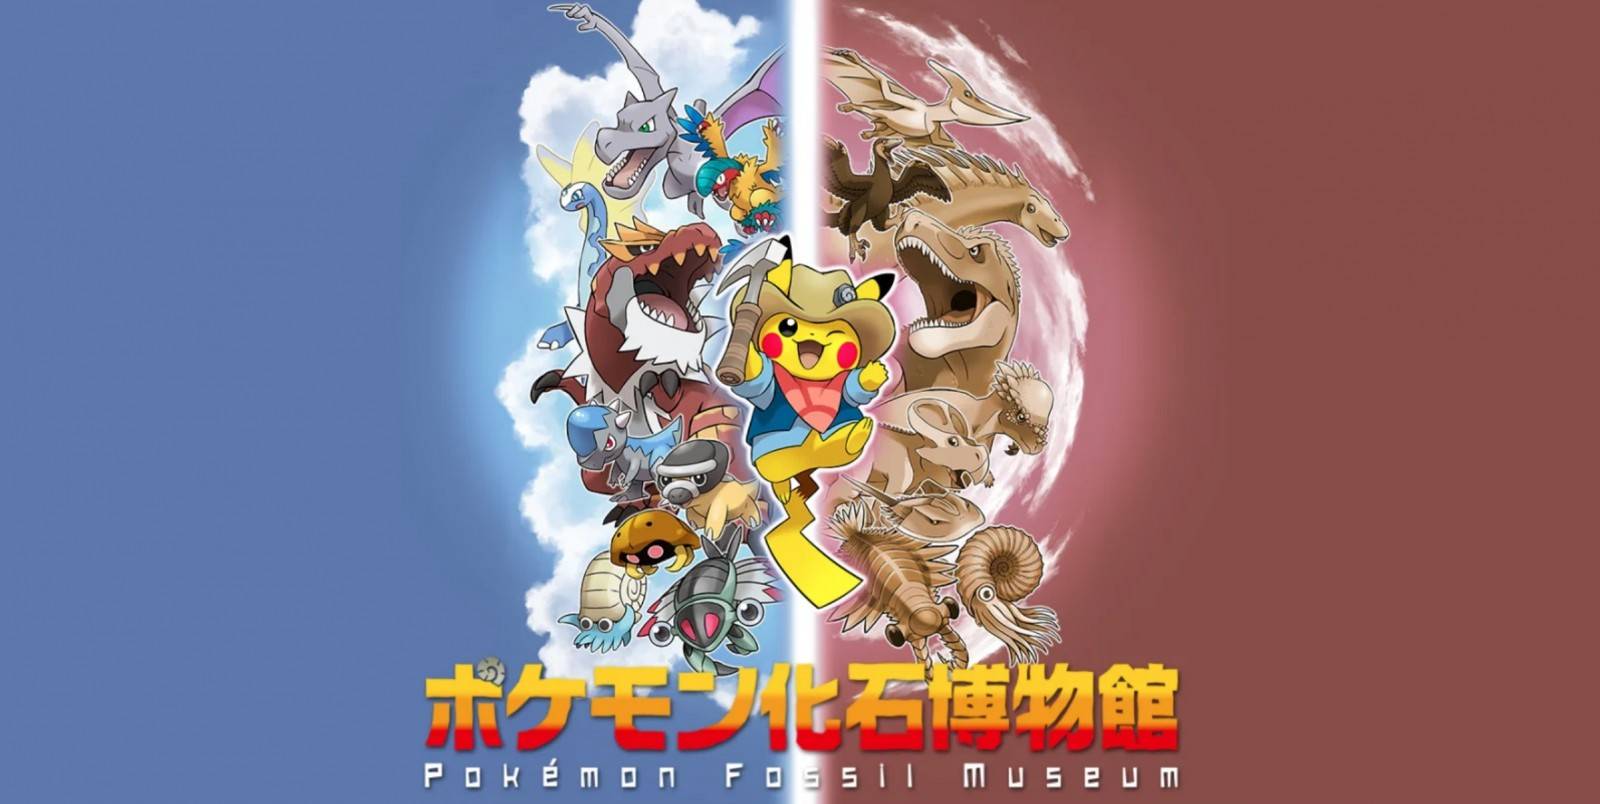 Pokémon: El dia de hoy Nintendo y Game Freak anunciaron una colaboración con el museo de la cuidad de Mikasa donde exhibirán fósiles.